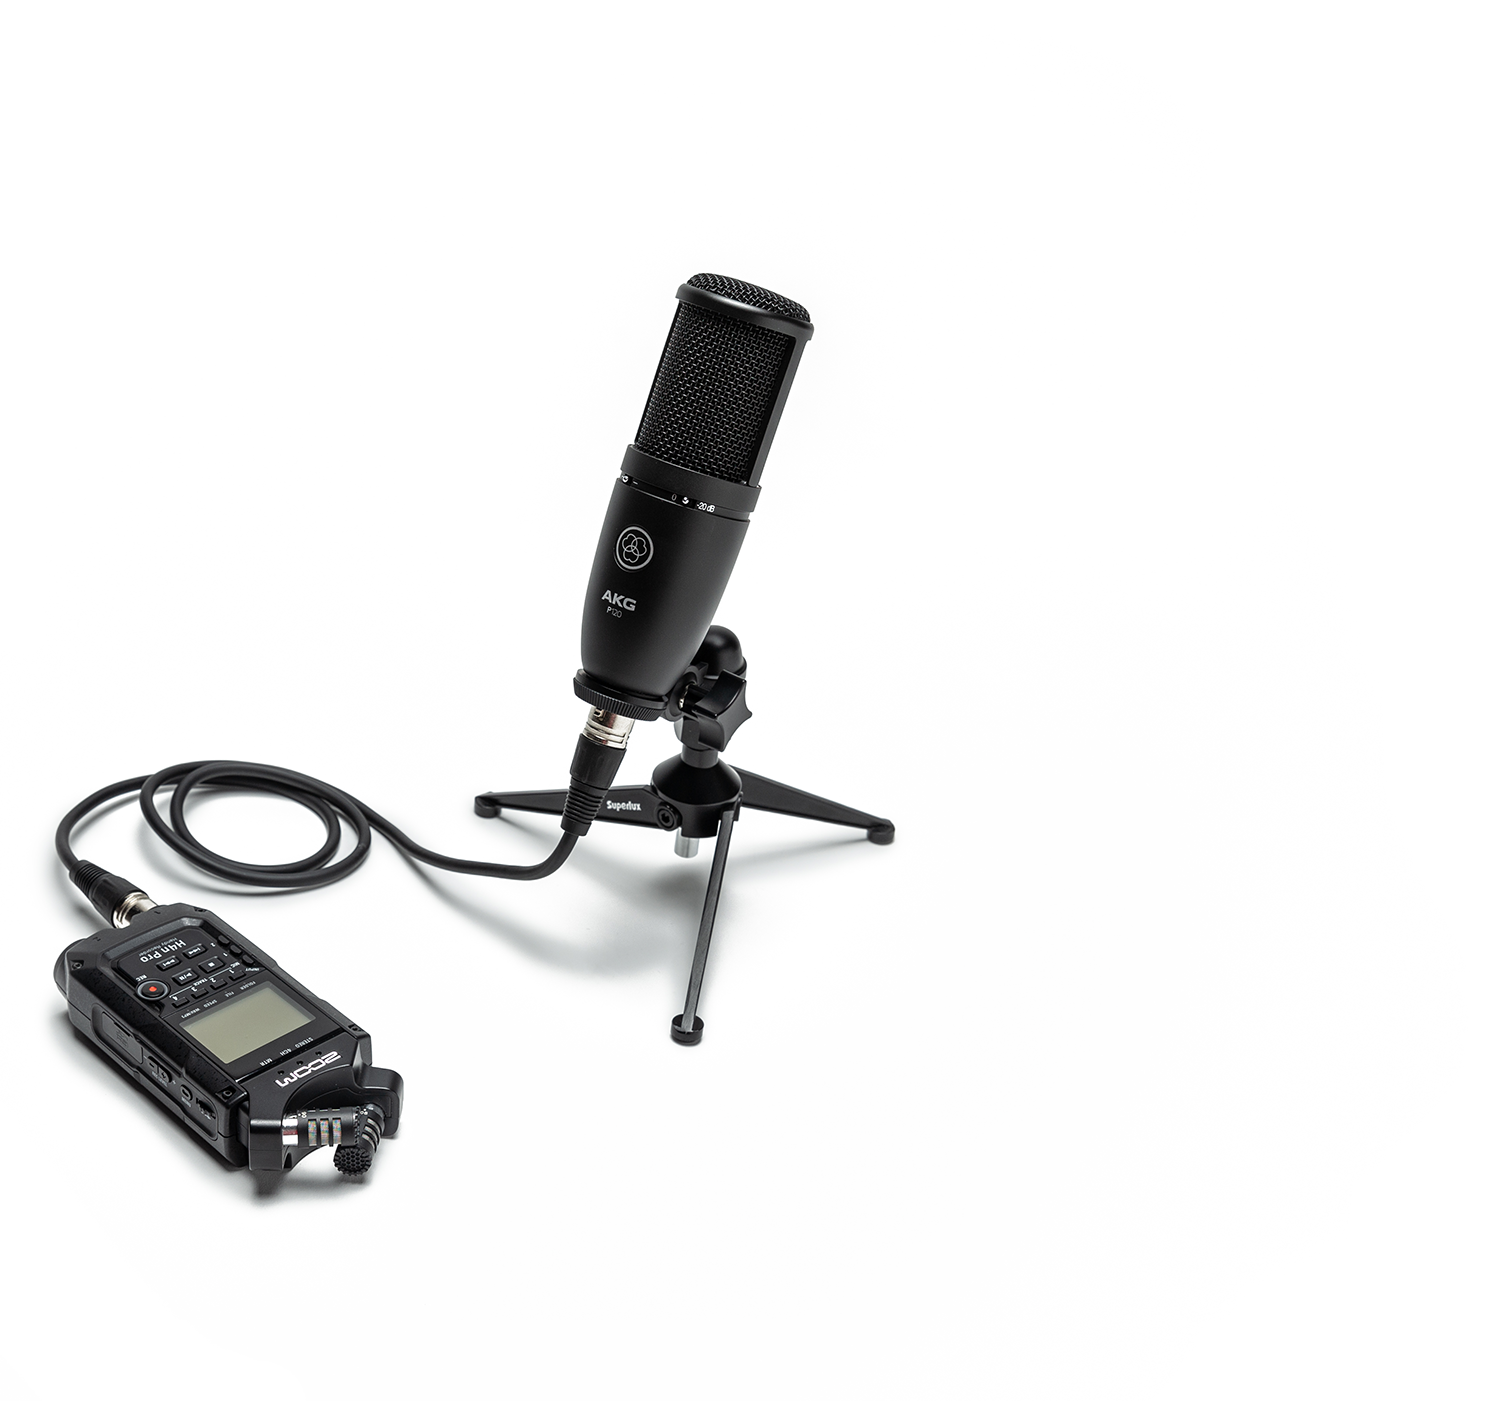 Kit Podcast Mic | Kit Remoto para Podcast Oferecemos um total de 7 kits para gravacões remotas de podcasts e vídeocasts. As maletas podem ser enviadas com facilidade até os participantes.  4 kits são voltados para gravação de áudio e vídeo, e 3 kits somente para áudio. Além do nosso treinamento personalizado através de vídeochamada, os kits acompanham um manual impresso e também disponibilizamos uma vídeoaula rápida e prática ensiando a operação. O AKG Perception 120 é um microfone condensador de construção sólida, o que garante um melhor desempenho e durabilidade. Possui um diafragma de alta qualidade proporcionando um som mais claro e preciso, além de duas chaves seletoras: com pre atenuação de 20dB e um filtro de baixas frequências. O Perception 120 é uma excelente opção para gravações em estudio e ao vivo. 